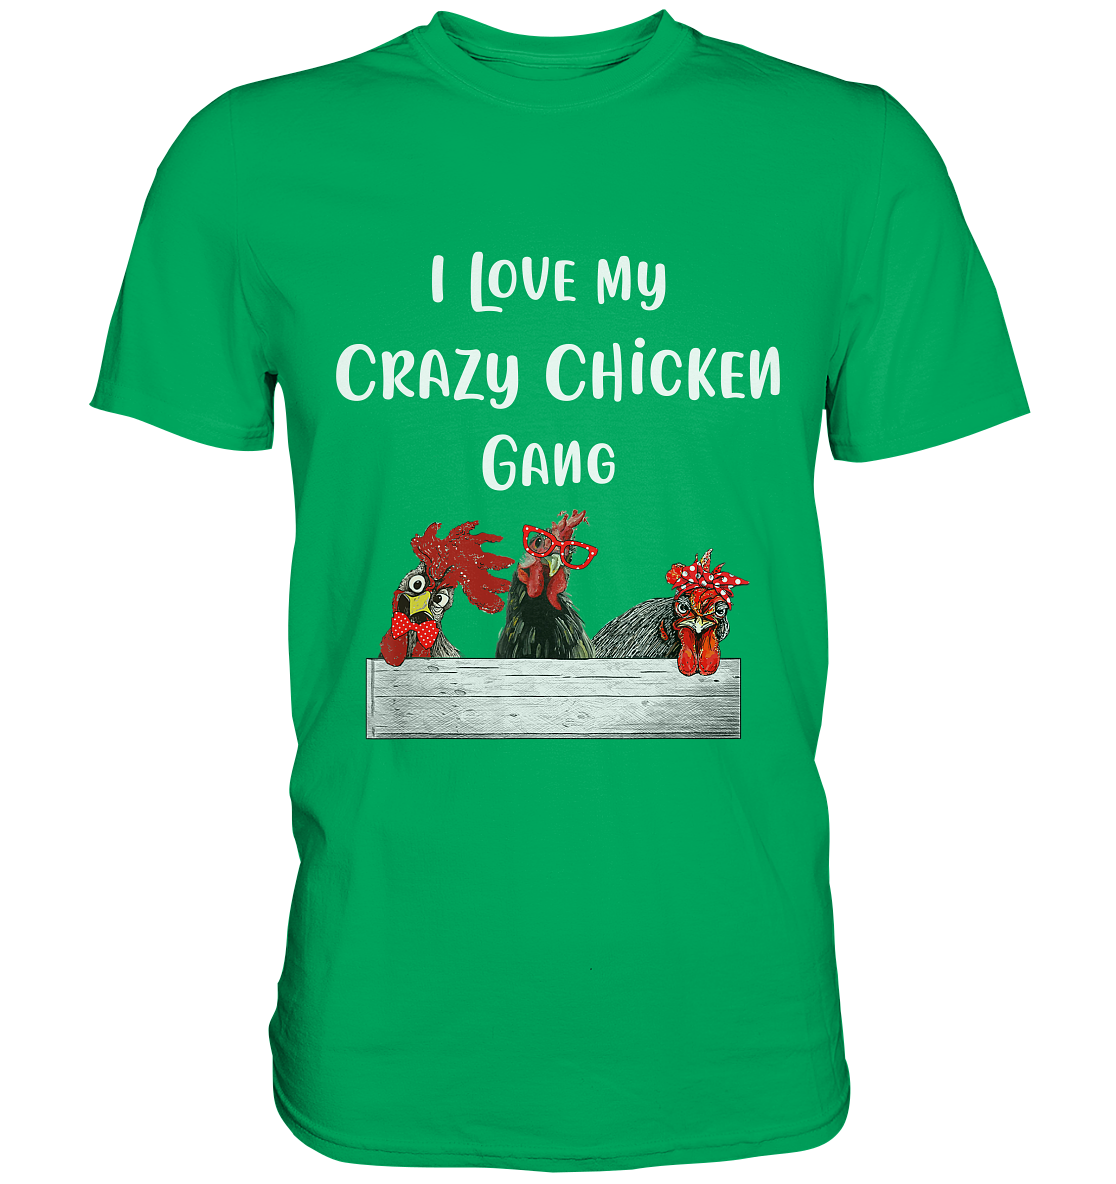 I love my crazy chicken gang. Verrückte Hühner - Unisex Premium Shirt